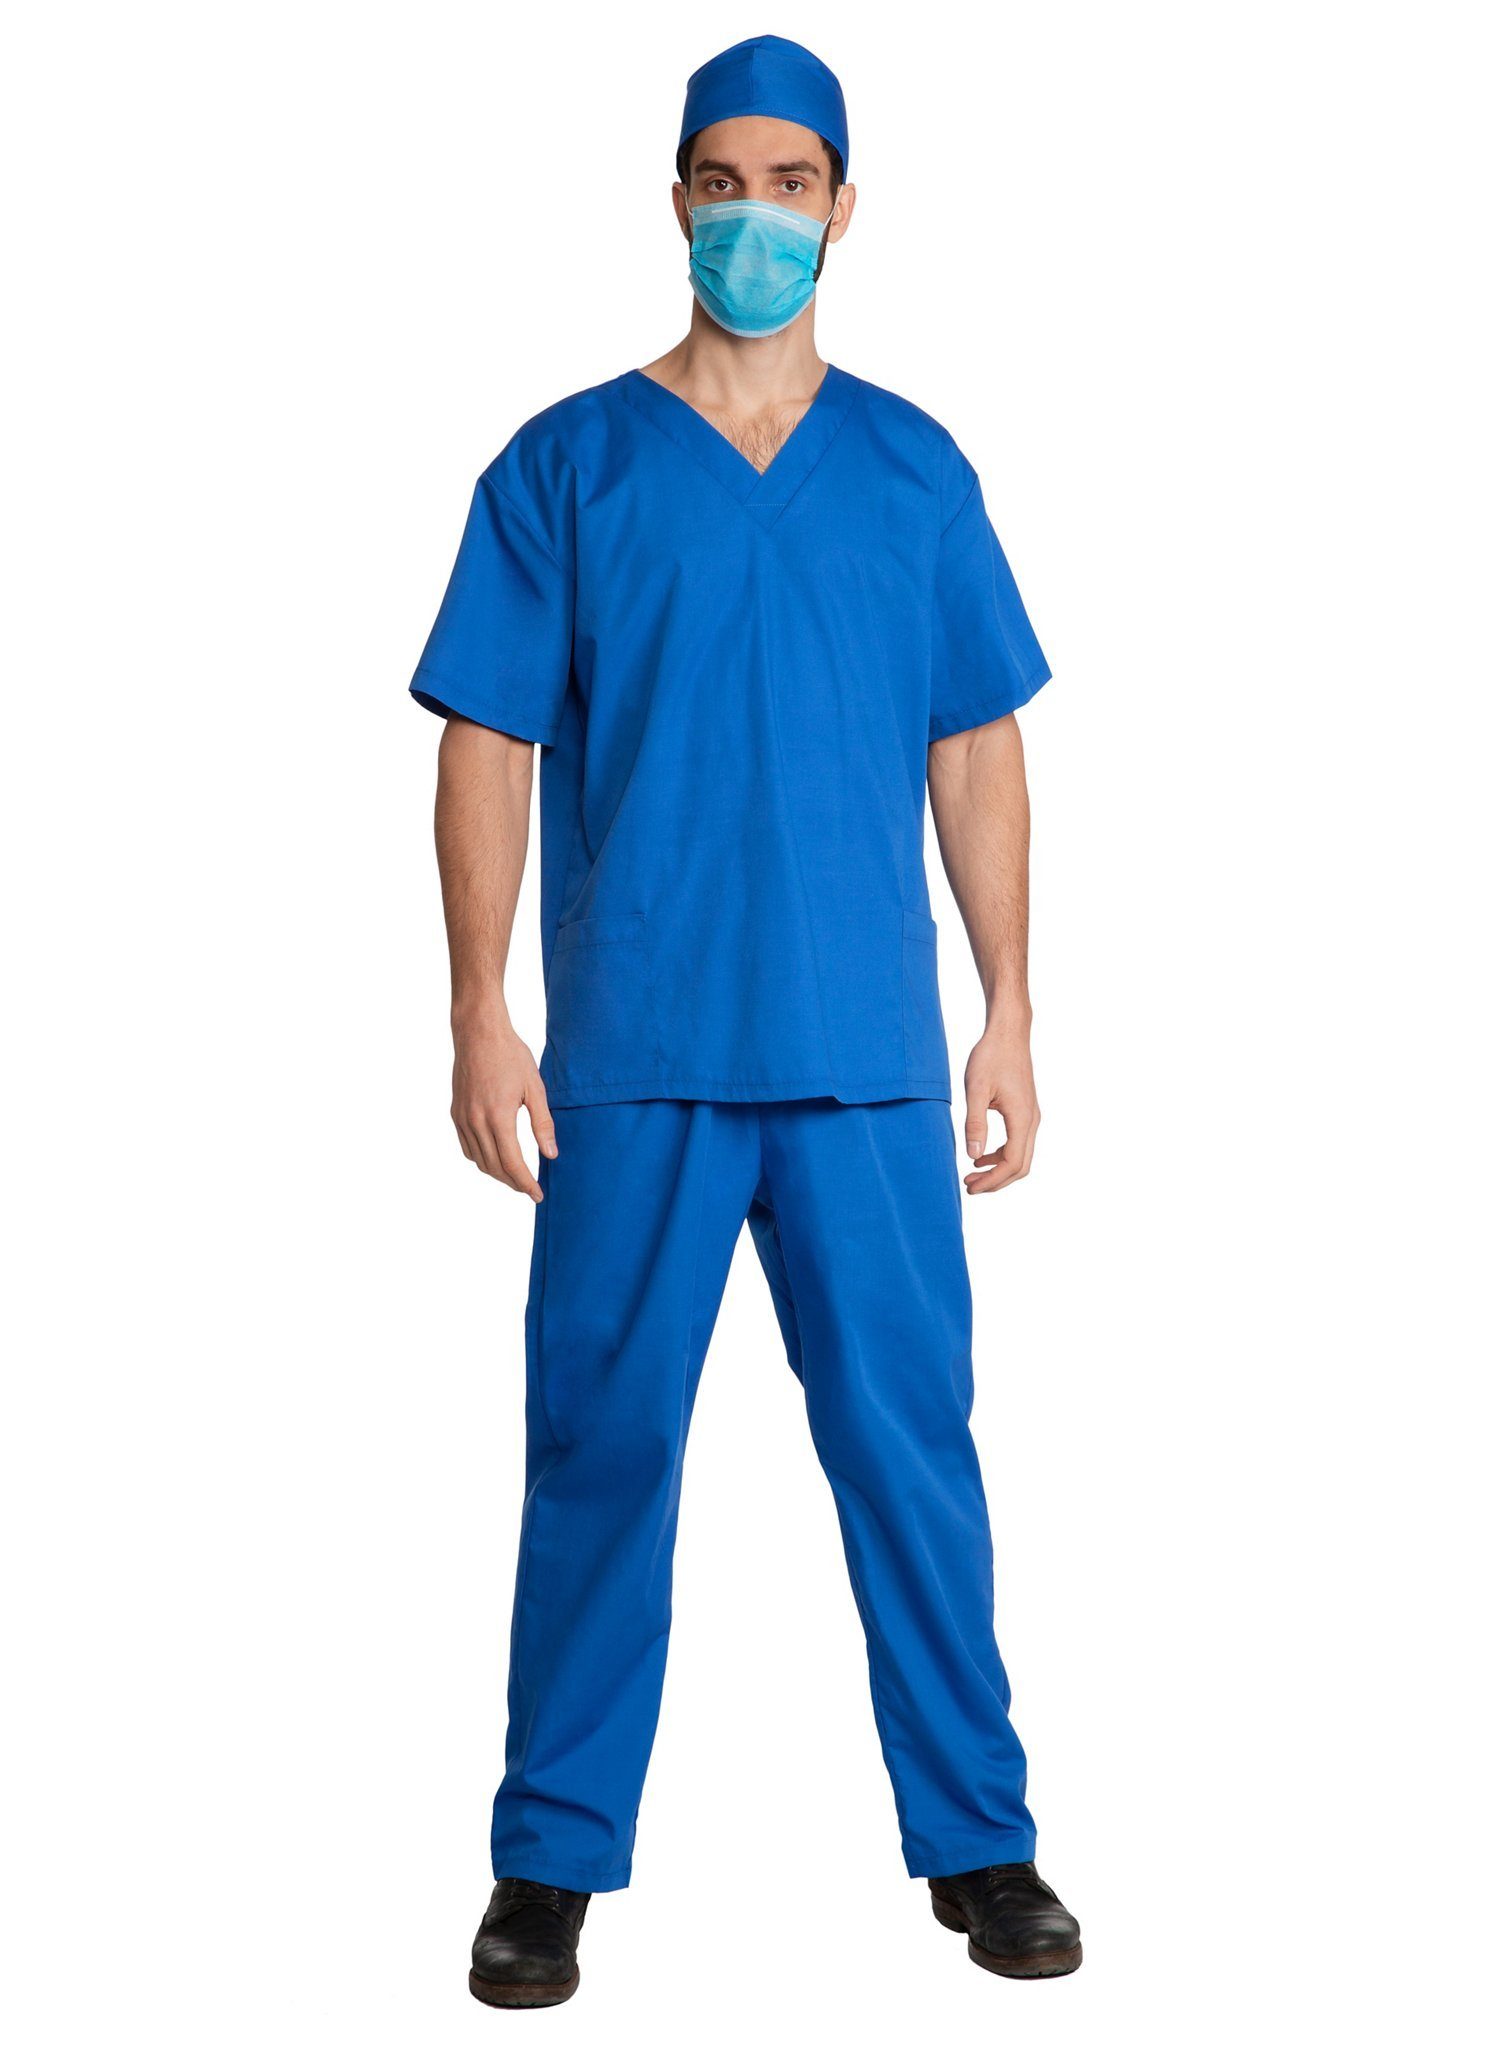 Maskworld Kostüm Chirurg, Das Kostüm, dem die Ärzte vertrauen!